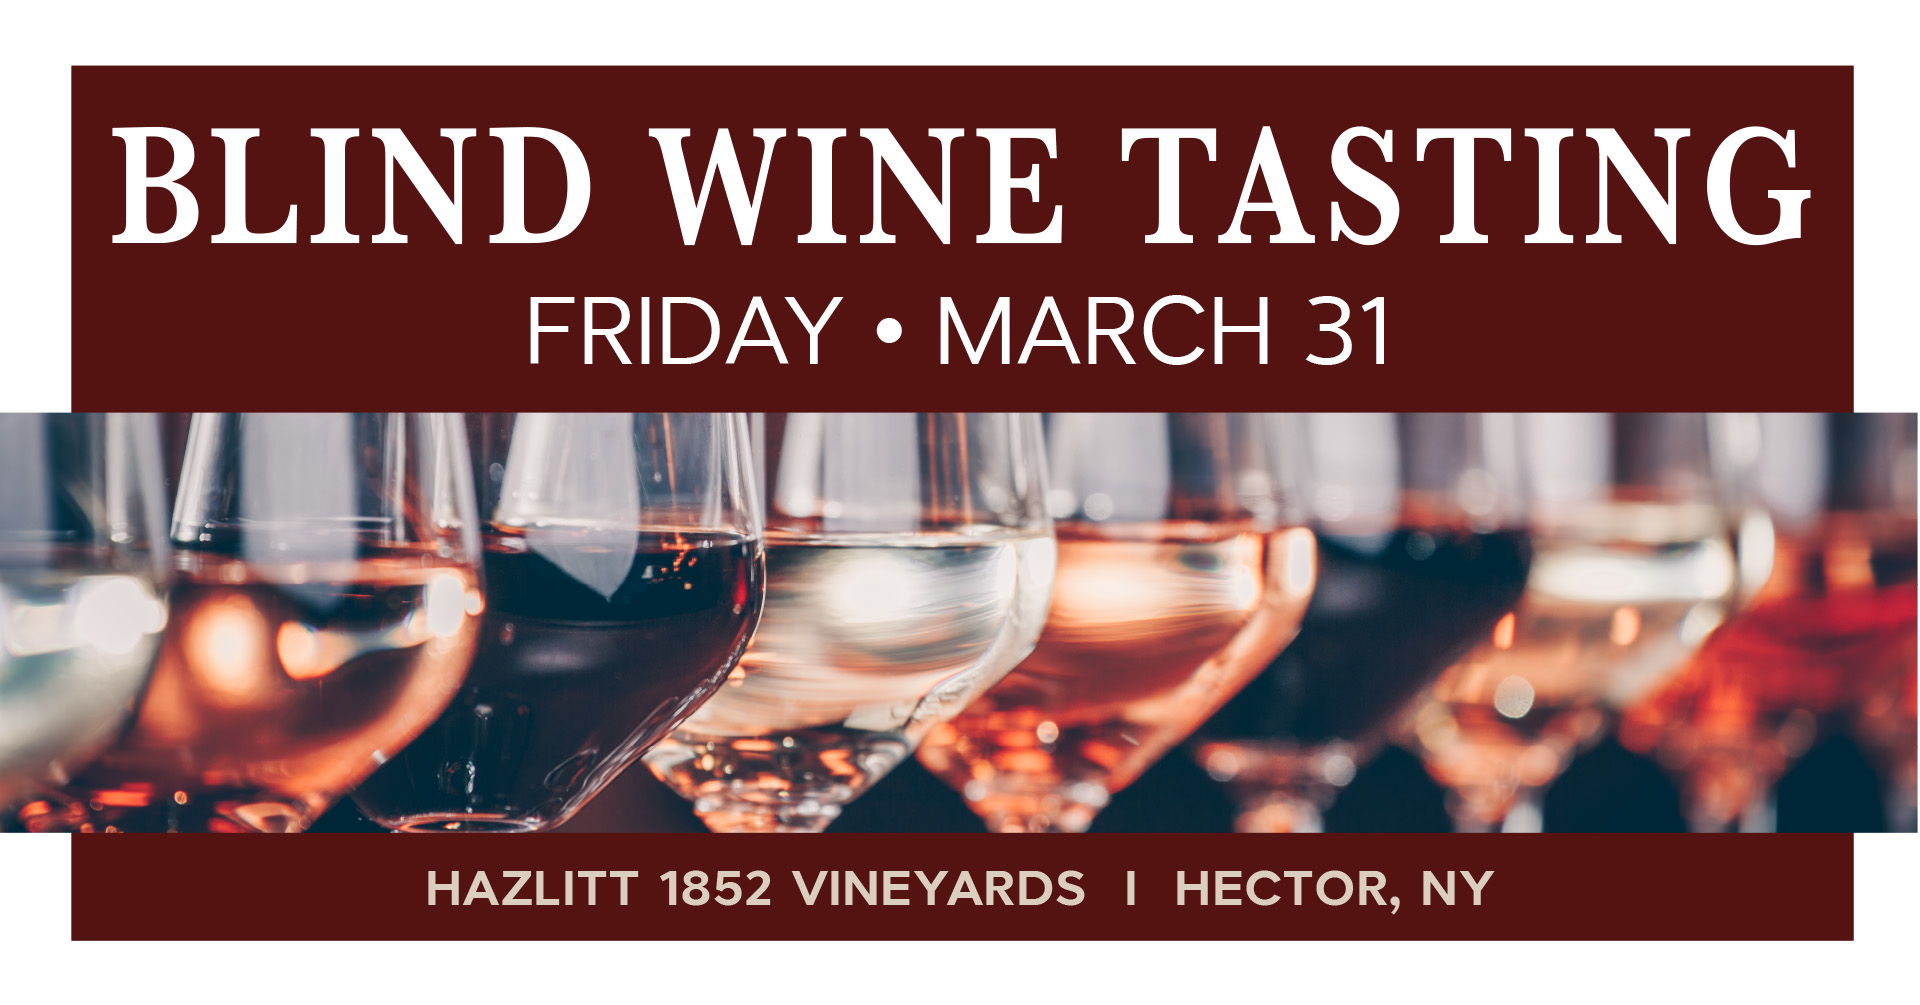 Blind Wine Tasting Friday March 31 at Hazlitt 1852 Vineyards, Hector, NY